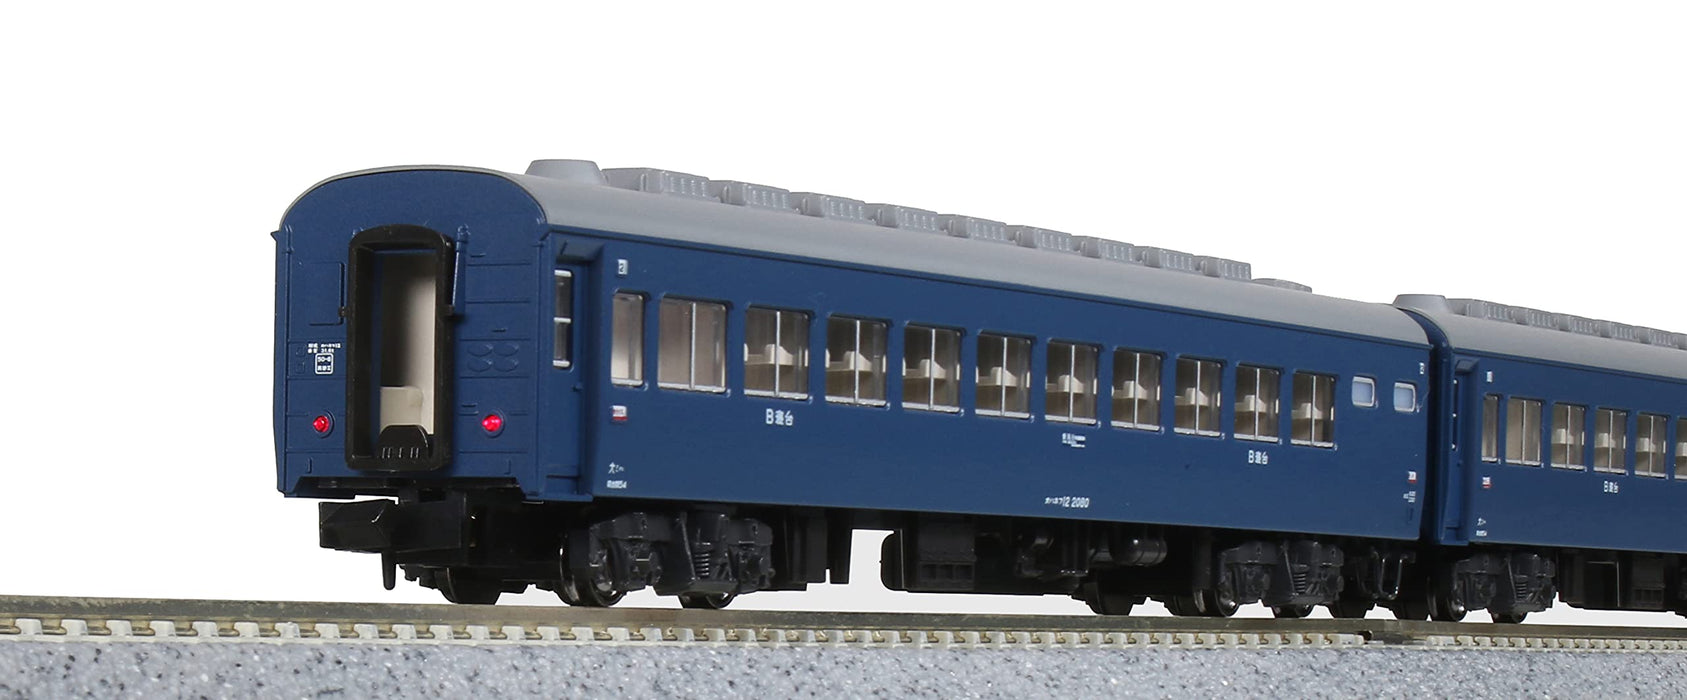 Kato N Gauge Ensemble de 8 voitures Kitaguni Sleeper Express pour passagers – Modèle ferroviaire 10-1670